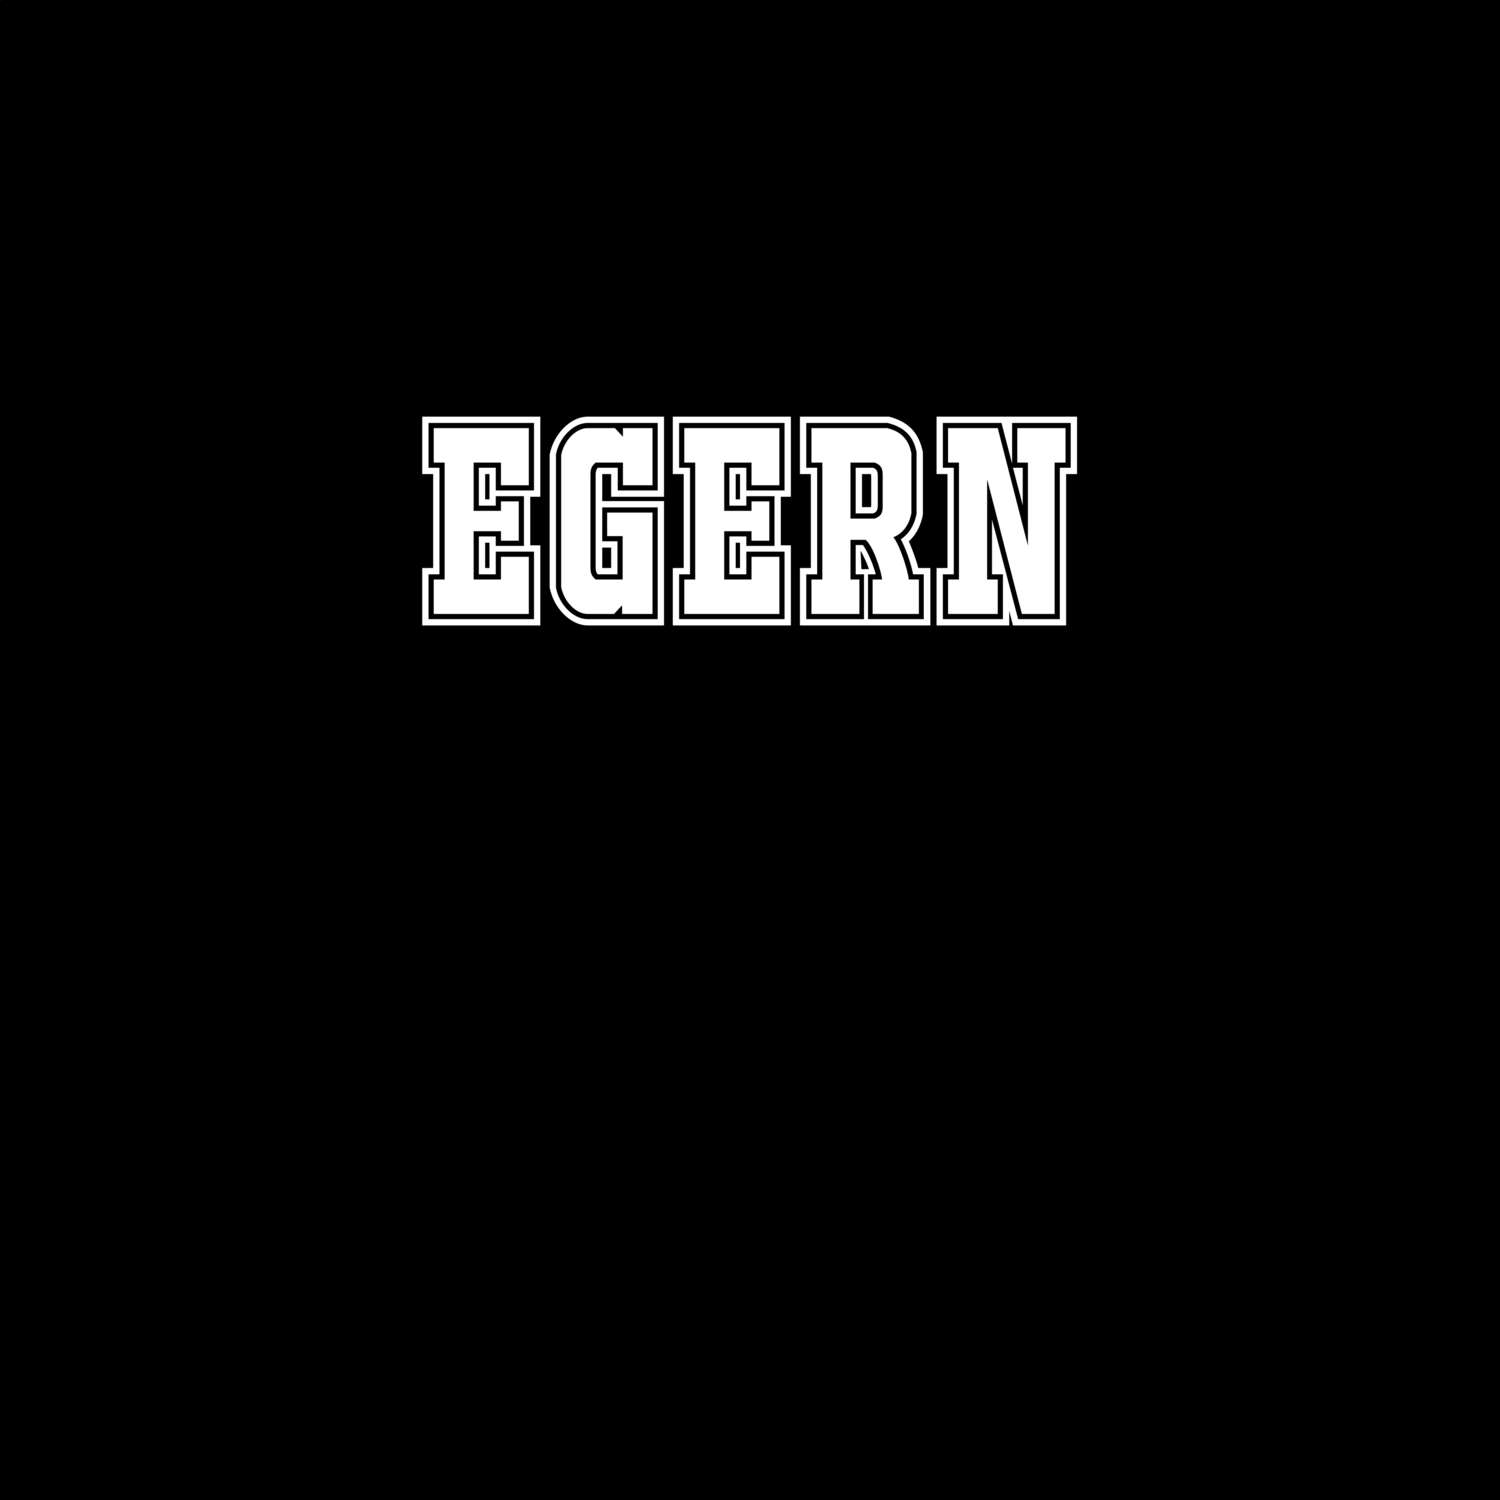 Egern T-Shirt »Classic«